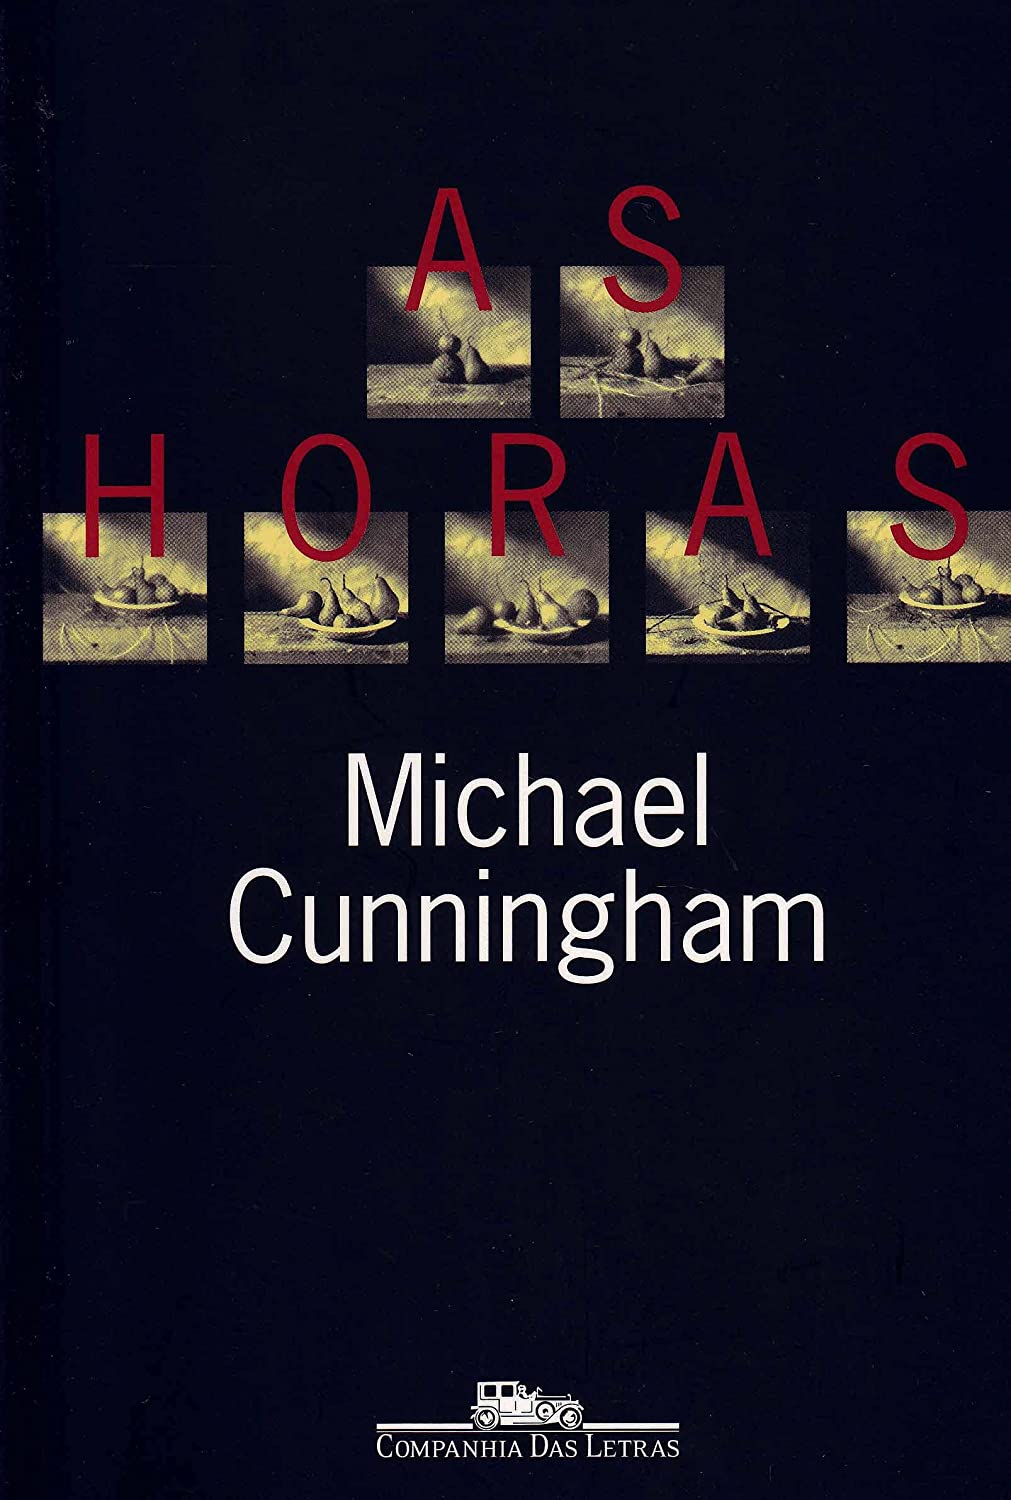 Michael Cunningham, Beth Vieira: As Horas (Paperback, Portuguese language, 1999, Companhia das Letras)